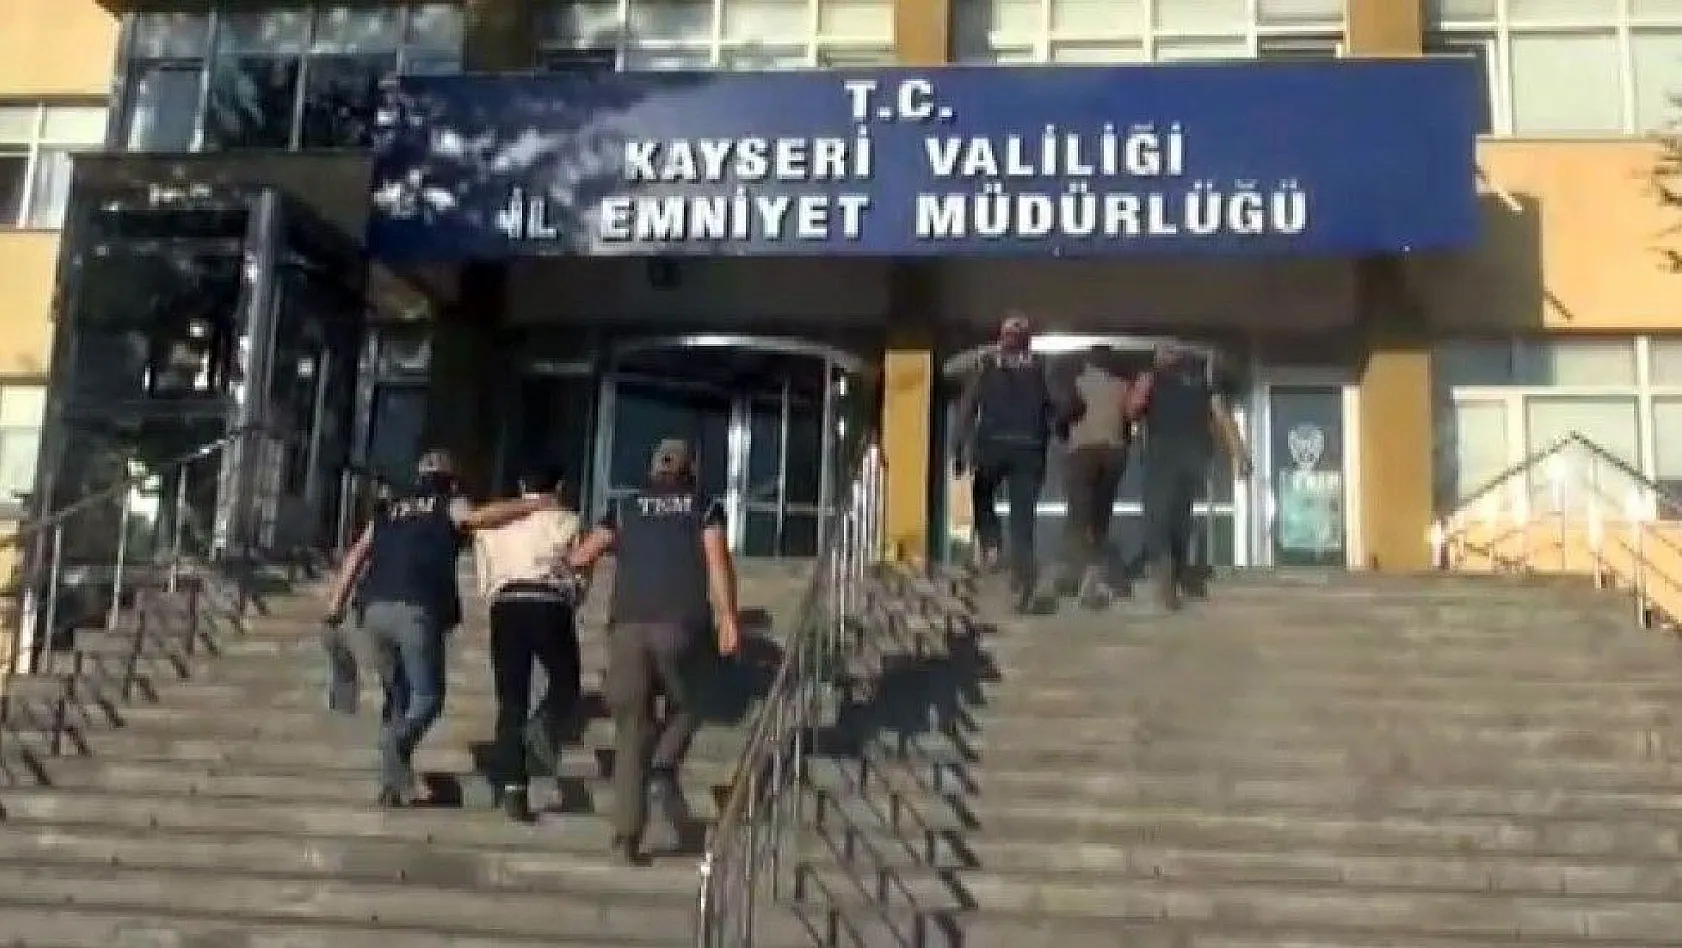 Kayseri'de DEAŞ adına faaliyet yürüten 3 kişi gözaltına alındı
